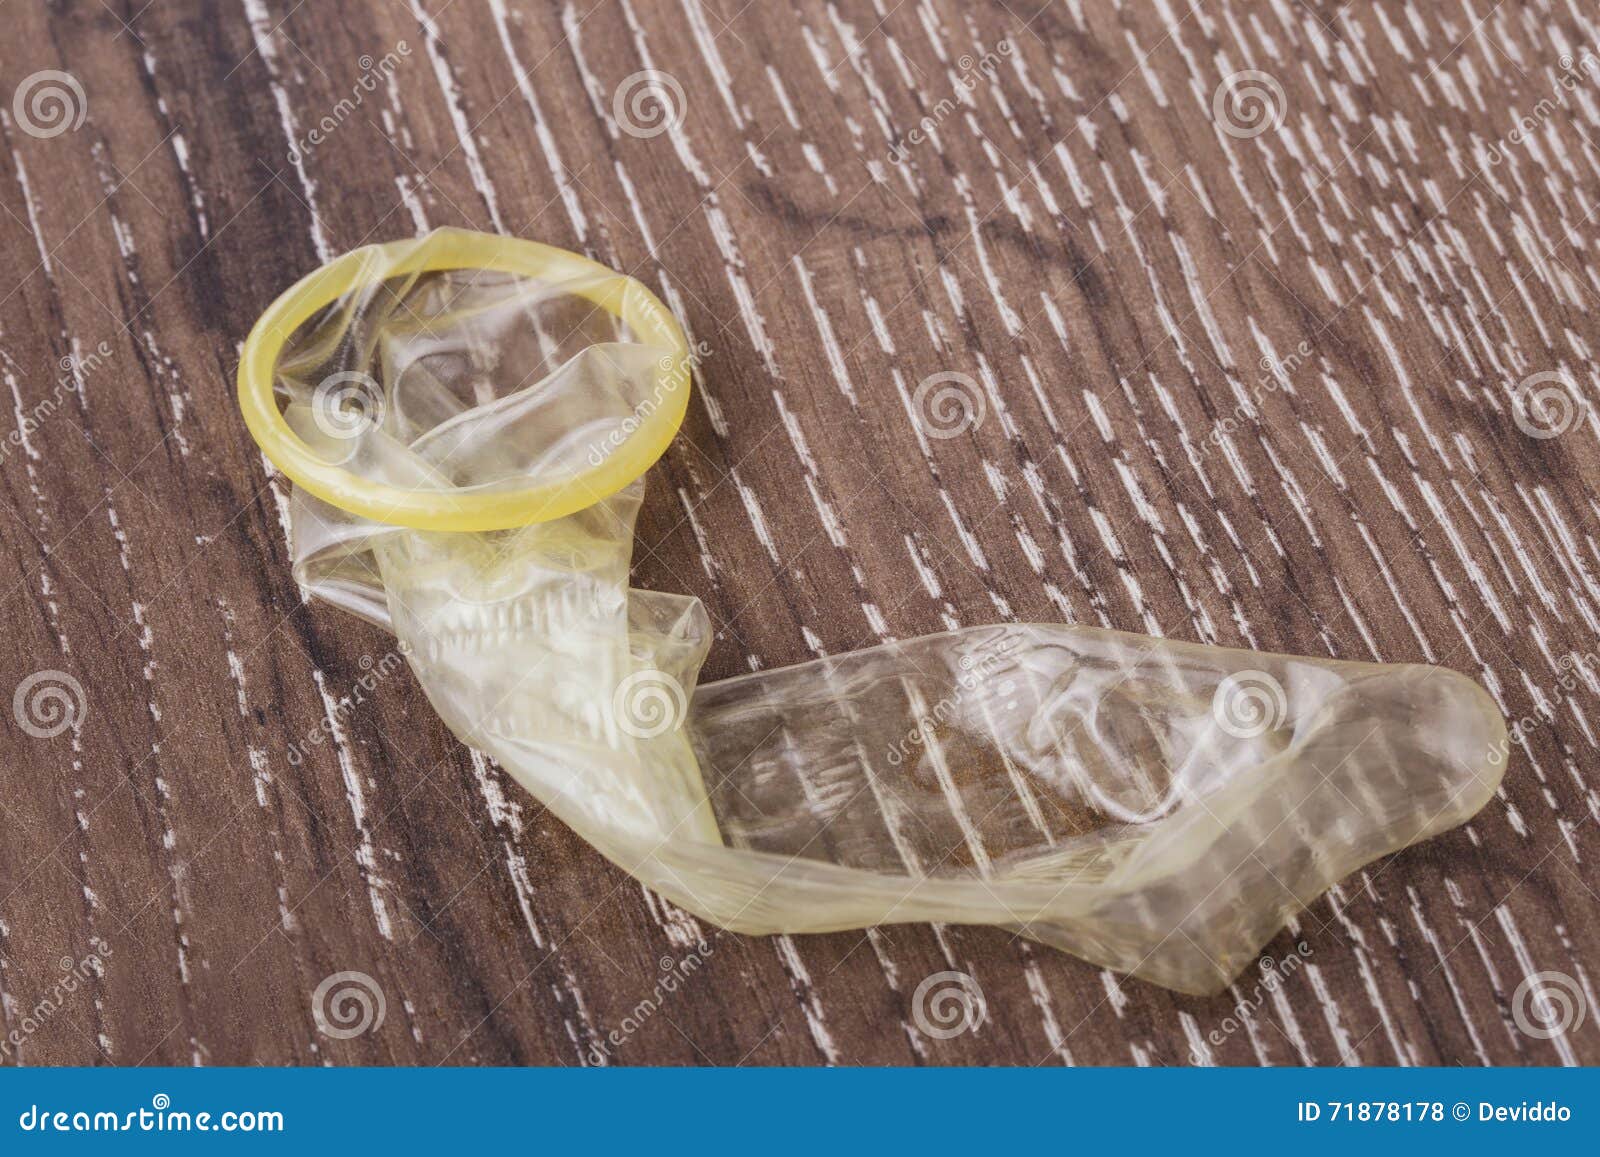 может ли порваться презерватив со спермой фото 26